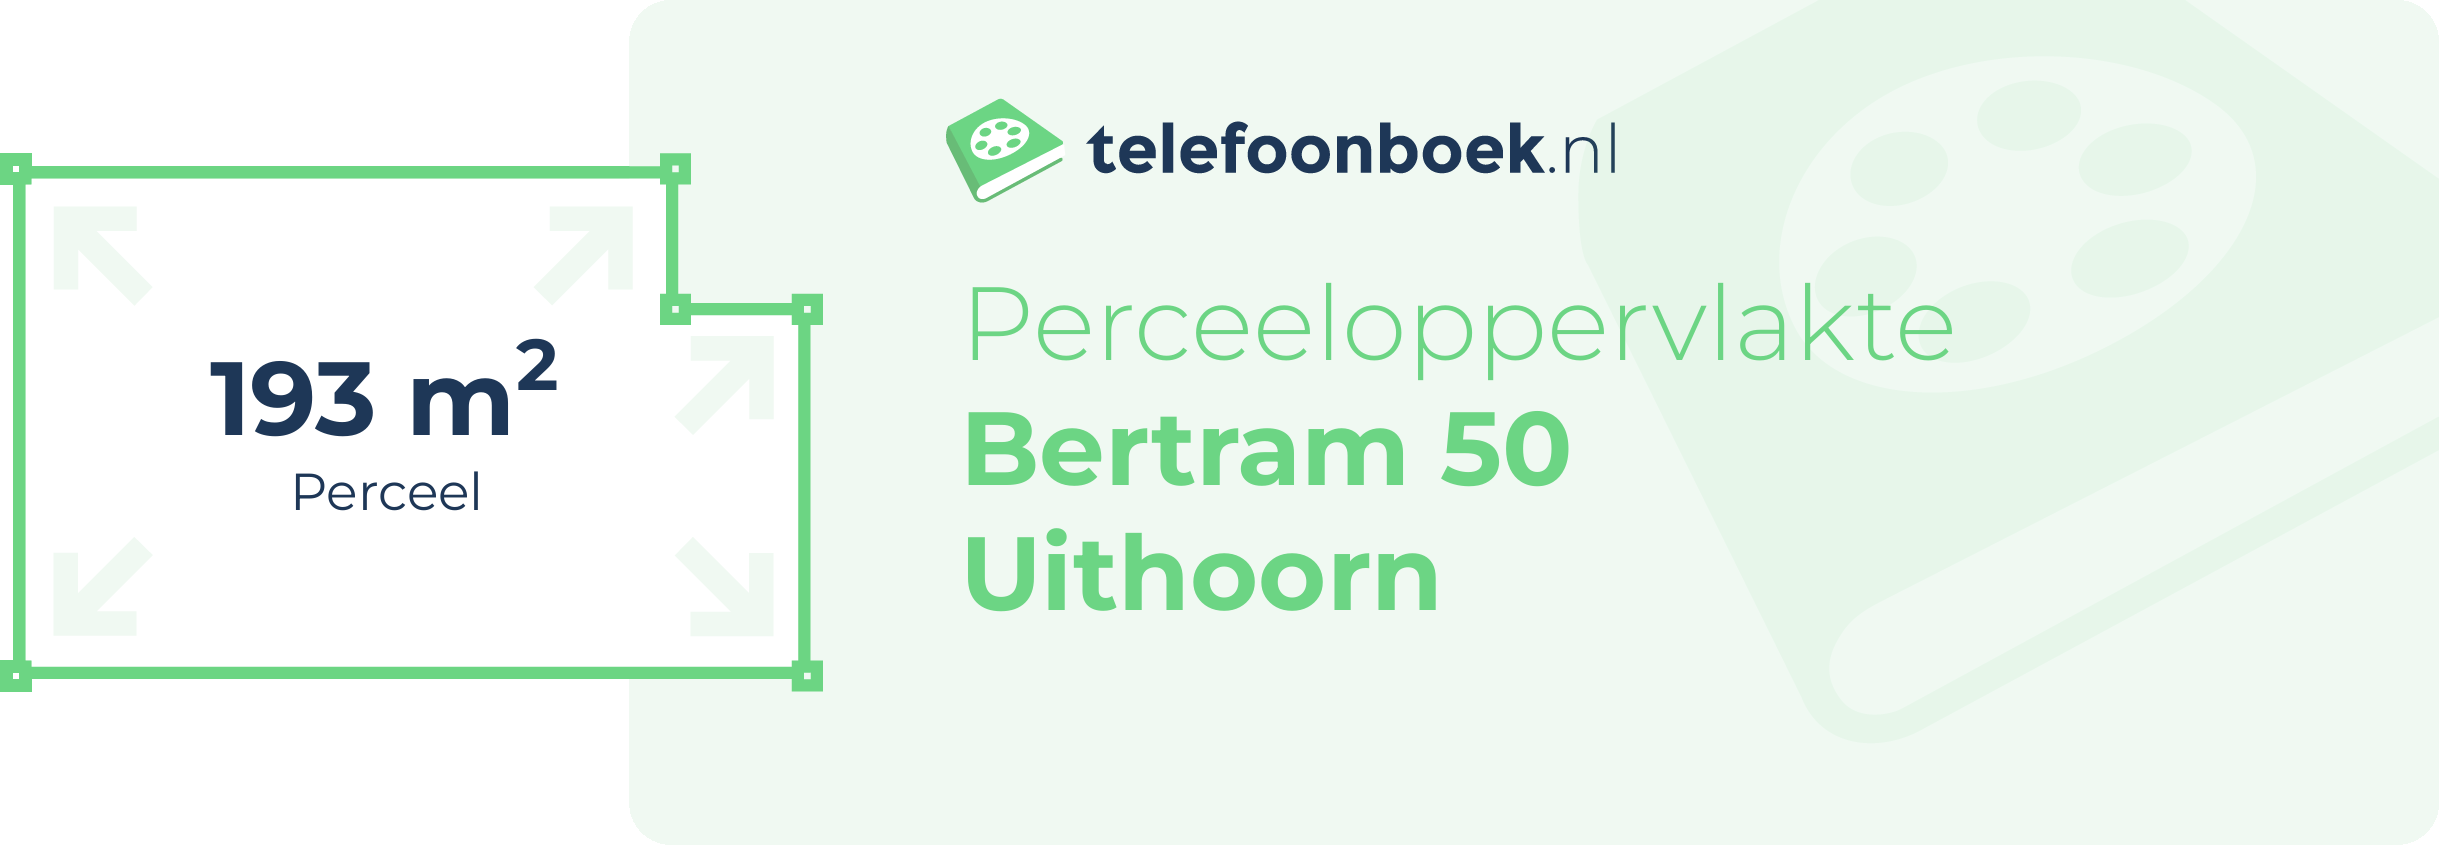 Perceeloppervlakte Bertram 50 Uithoorn